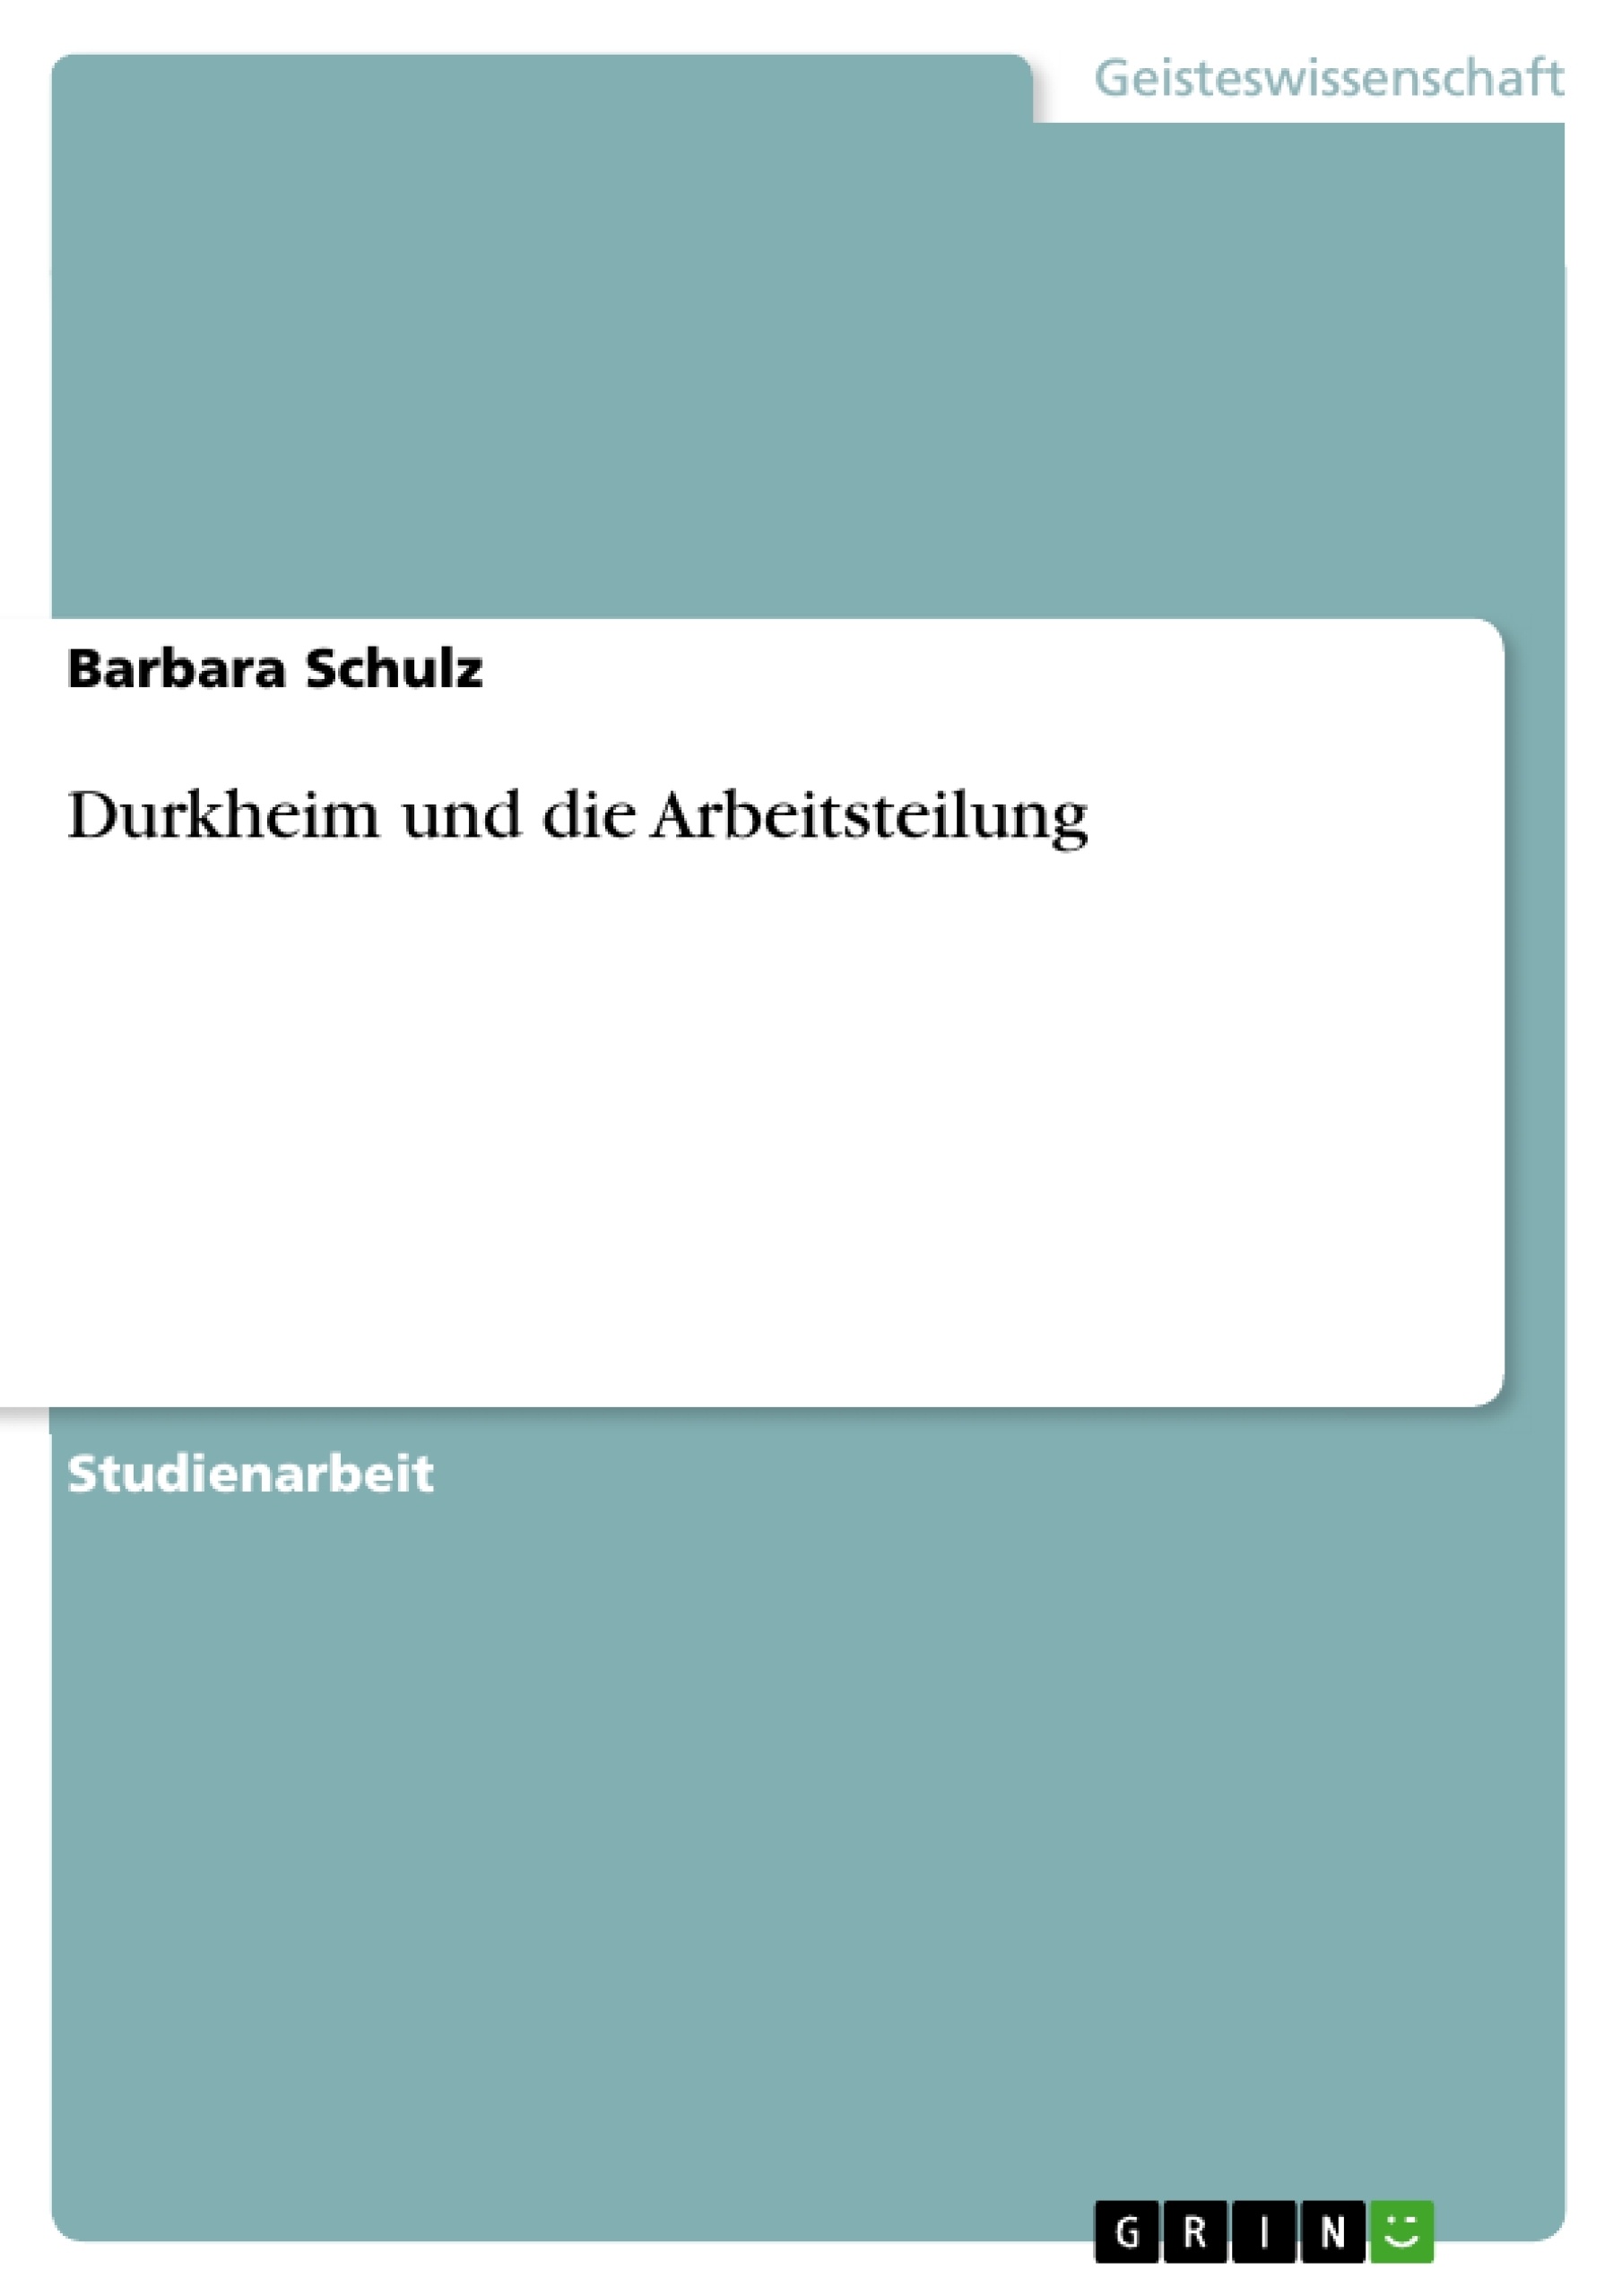 Titre: Durkheim und die Arbeitsteilung